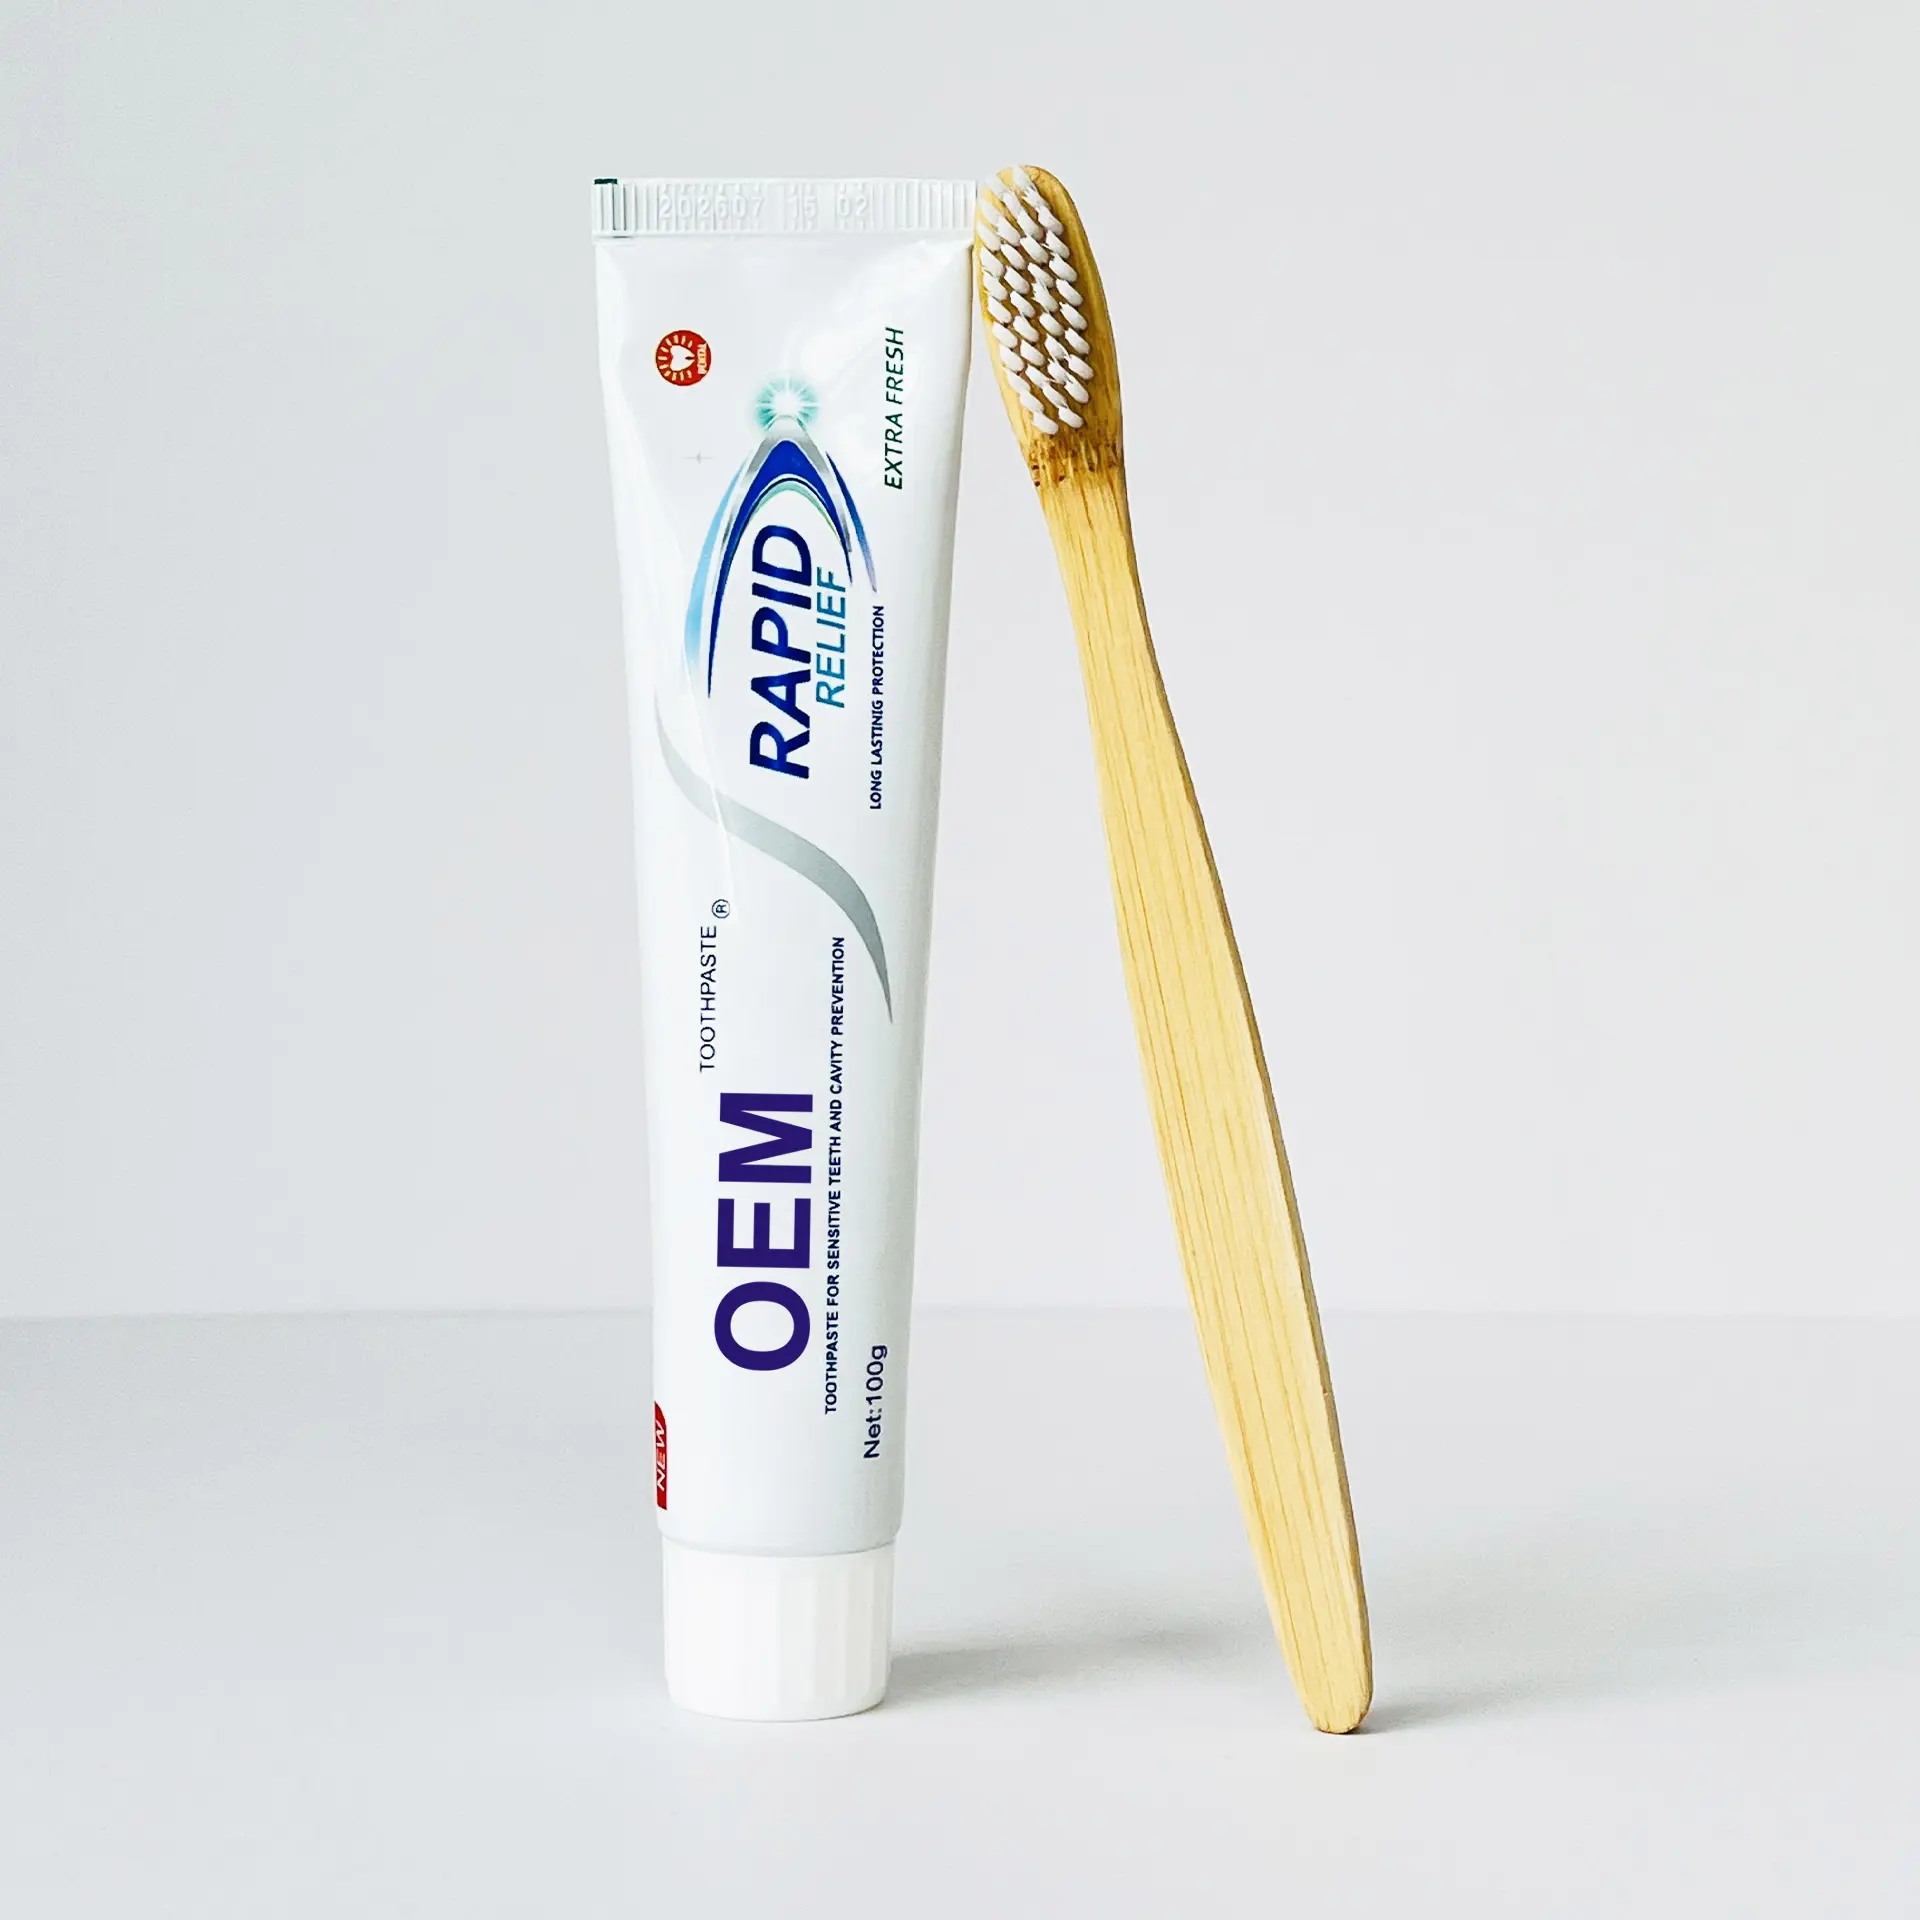 Pasta de dientes blanqueadora profesional al por mayor, precio barato, buena calidad, productos orgánicos naturales para el cuidado de las encías, pasta de dientes para eliminar manchas